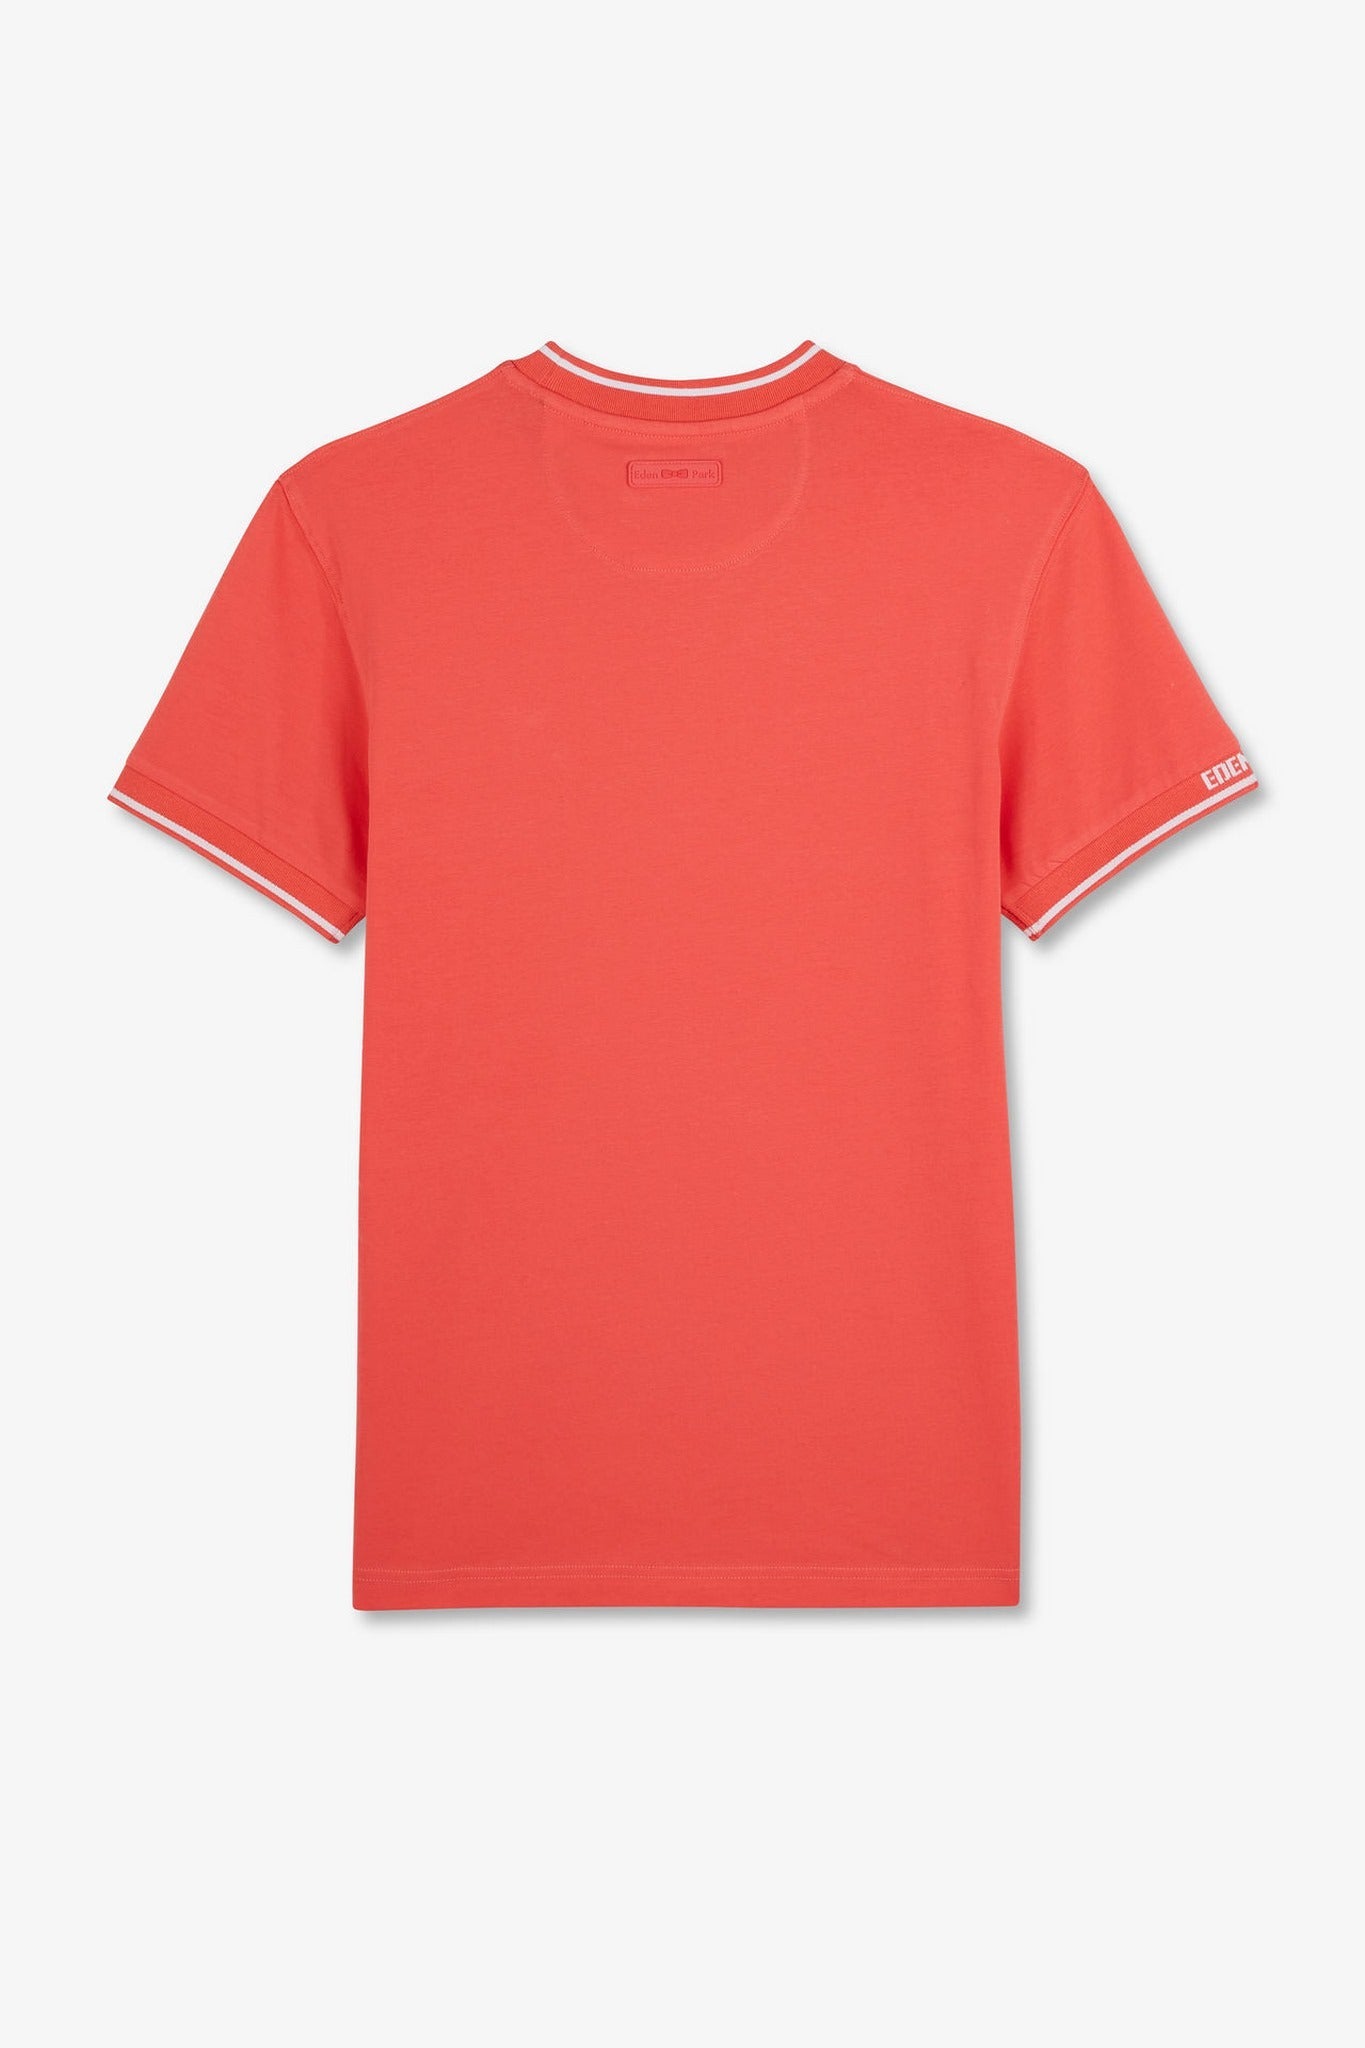 T-shirt rose à manches courtes - Image 4